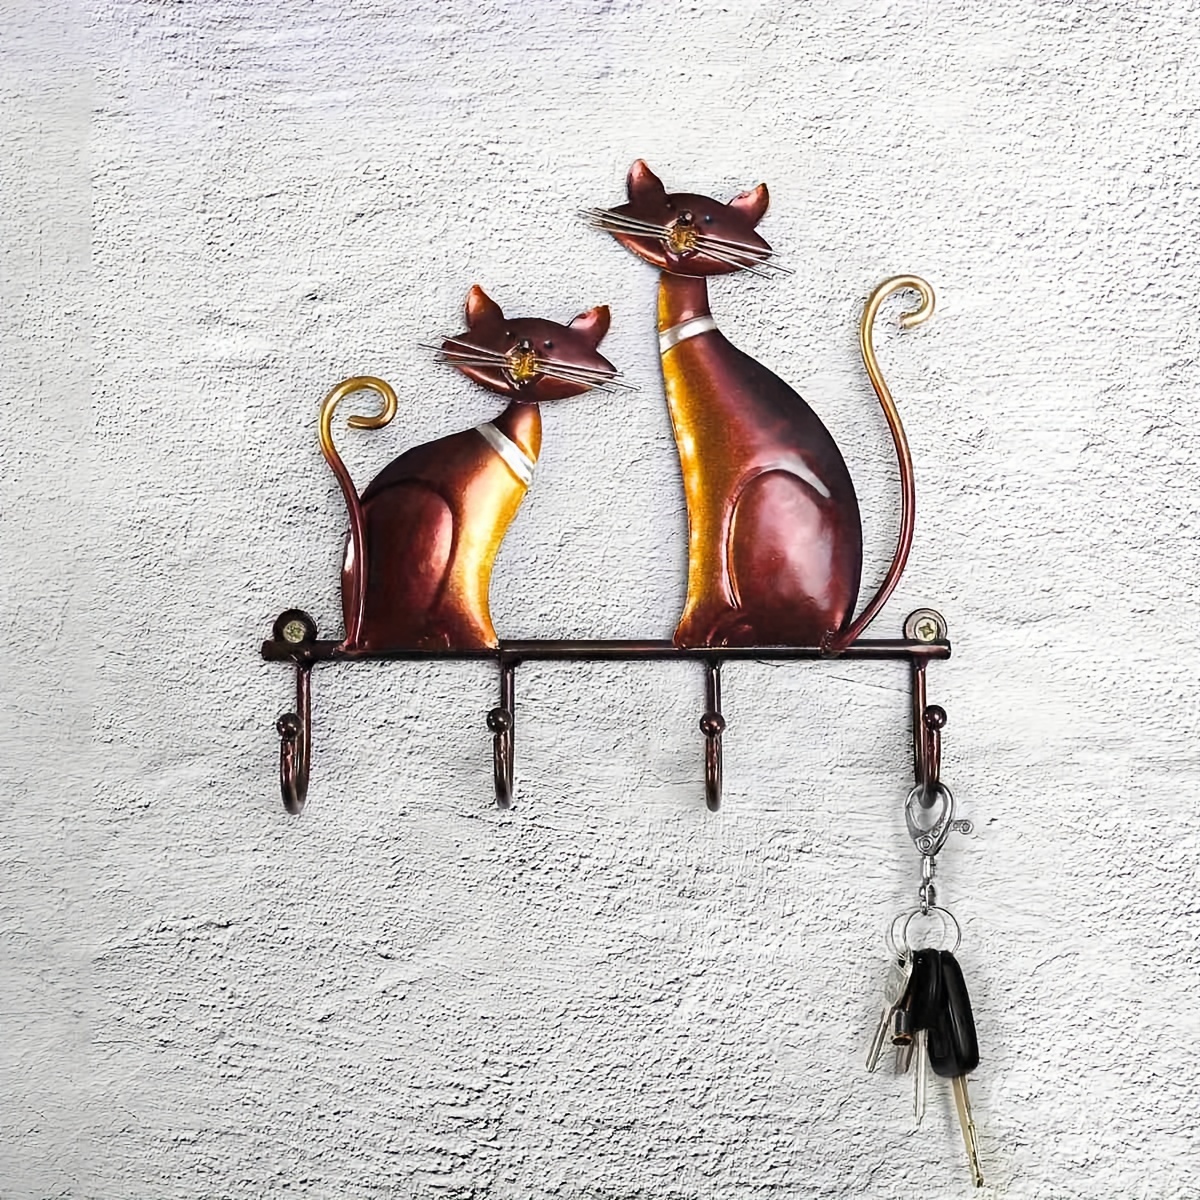 Creative Adhesive Coat Hook, Cute Cat Key Holder Hook, Wall